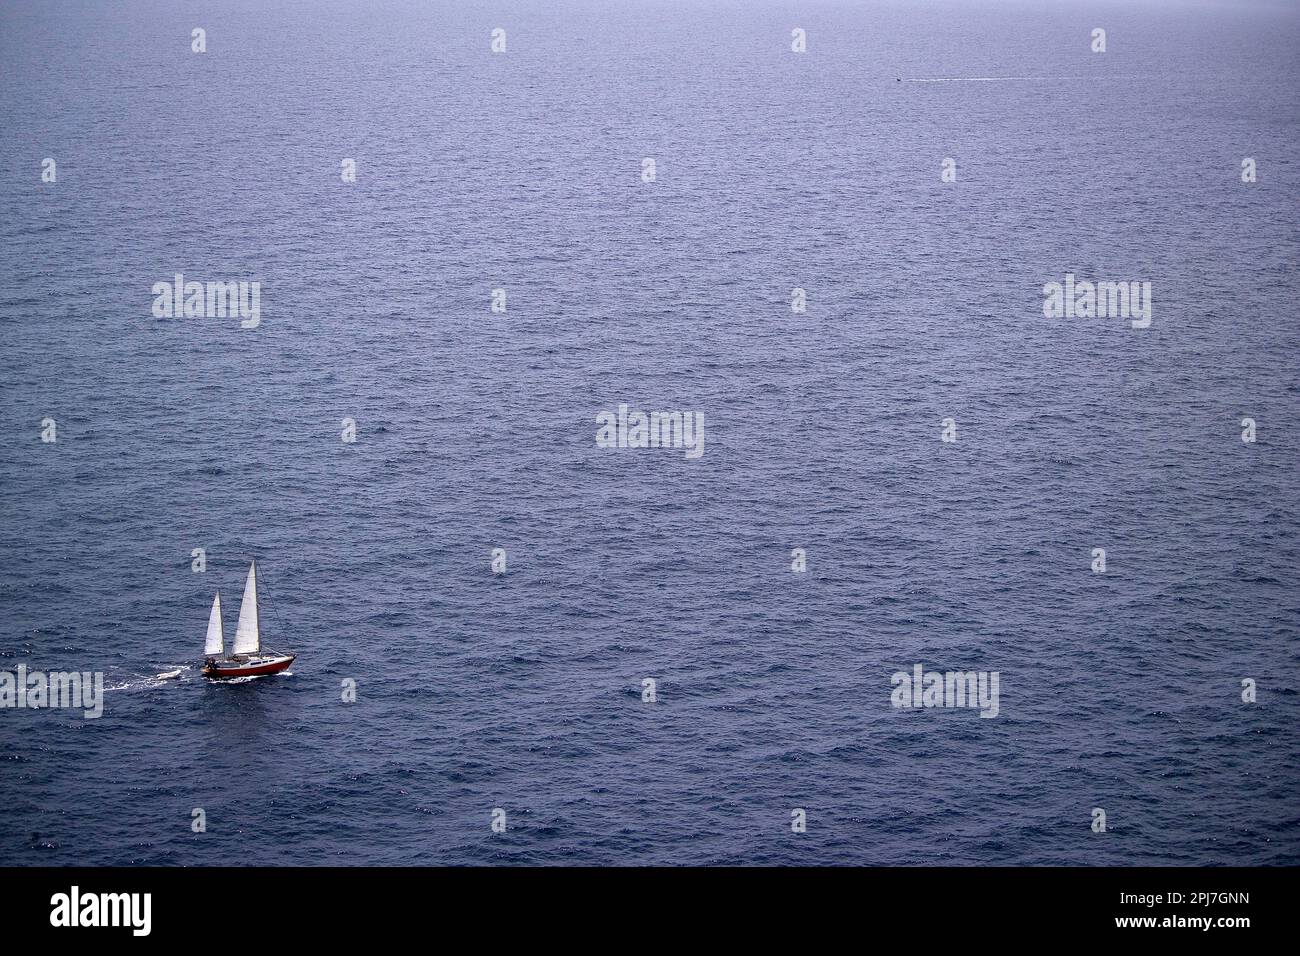 Barca a vela al largo di Capo Caccia. Alghero, Sardegna. Italia Stock Photo